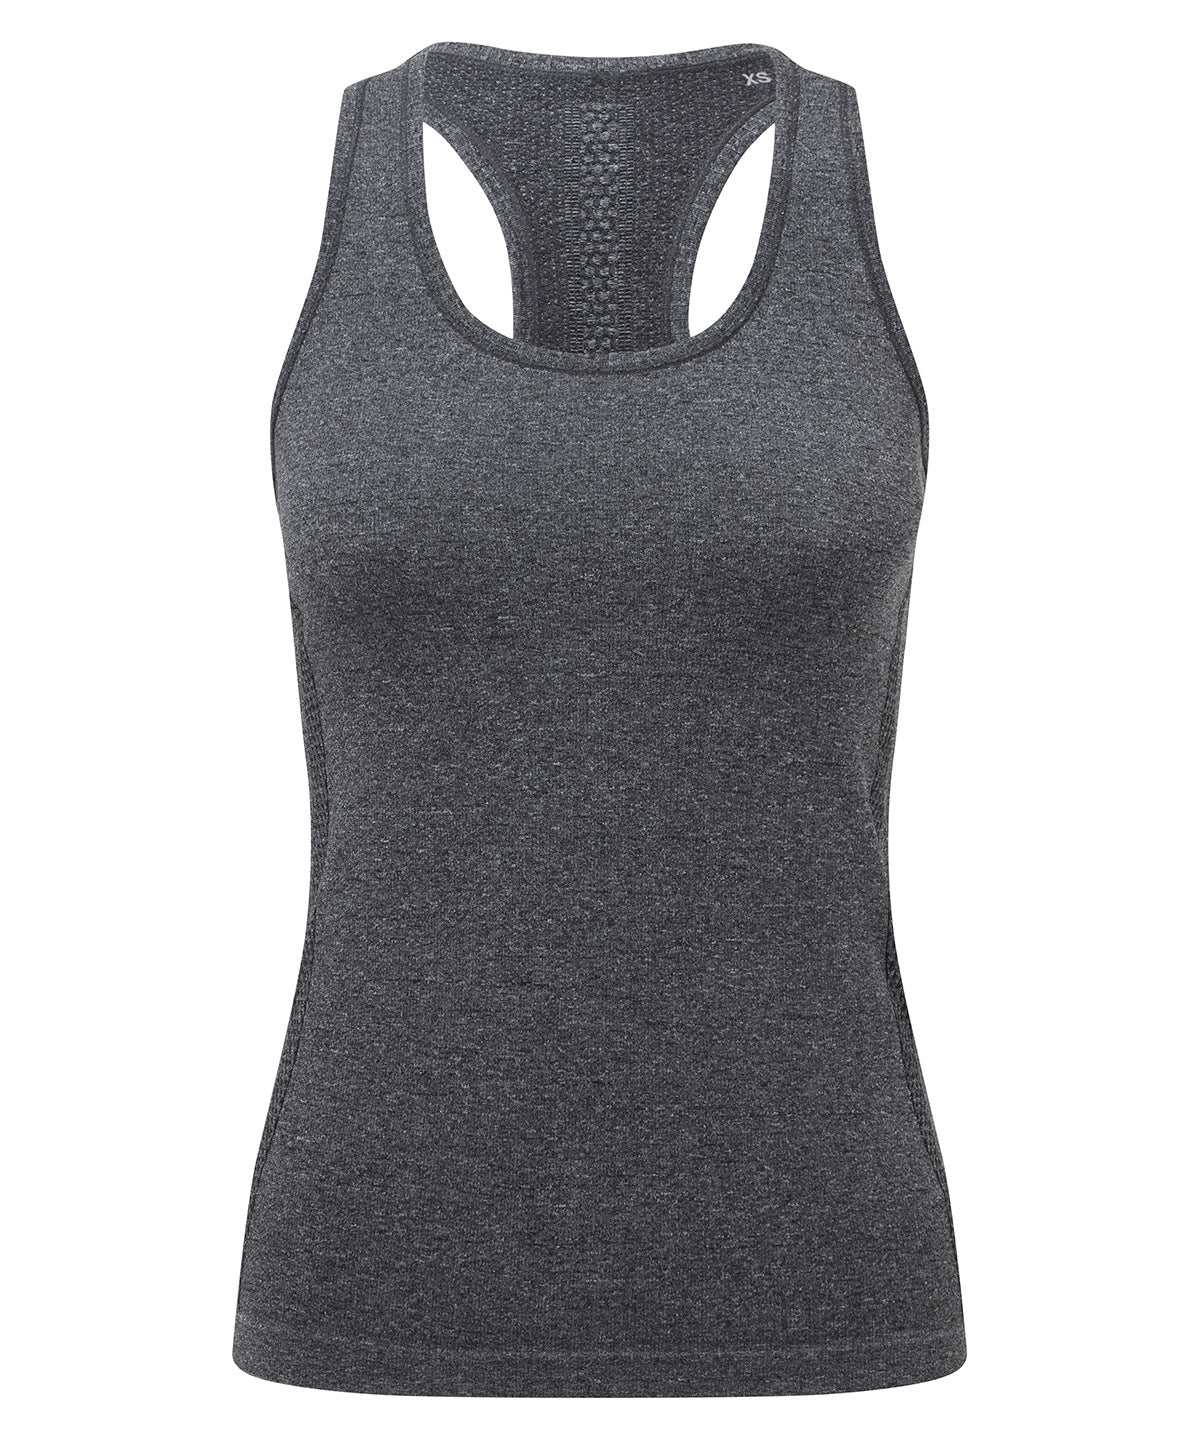 Vesti - Women's TriDri® Seamless '3D Fit' Multi-sport Sculpt Vest